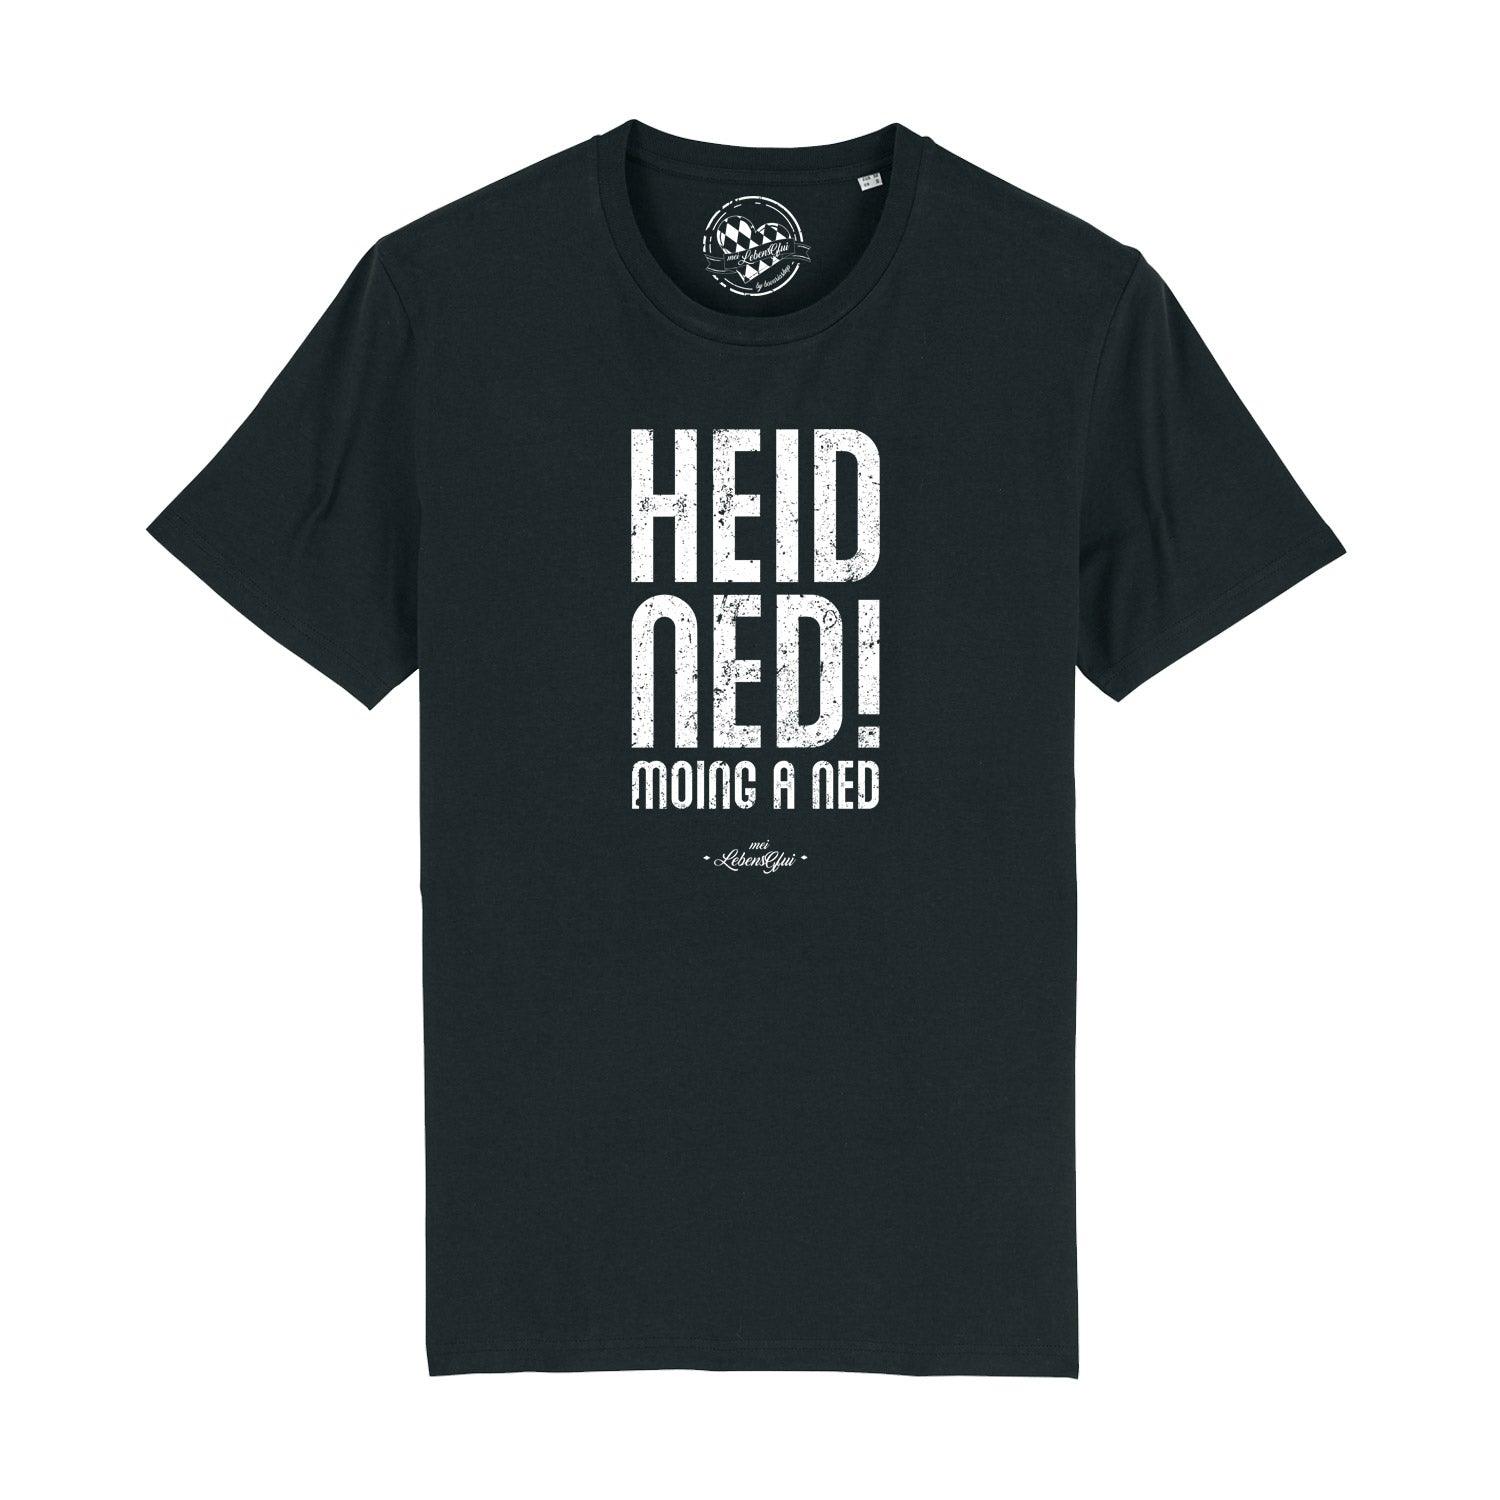 Herren T-Shirt "Heid ned moing a ned" - bavariashop - mei LebensGfui